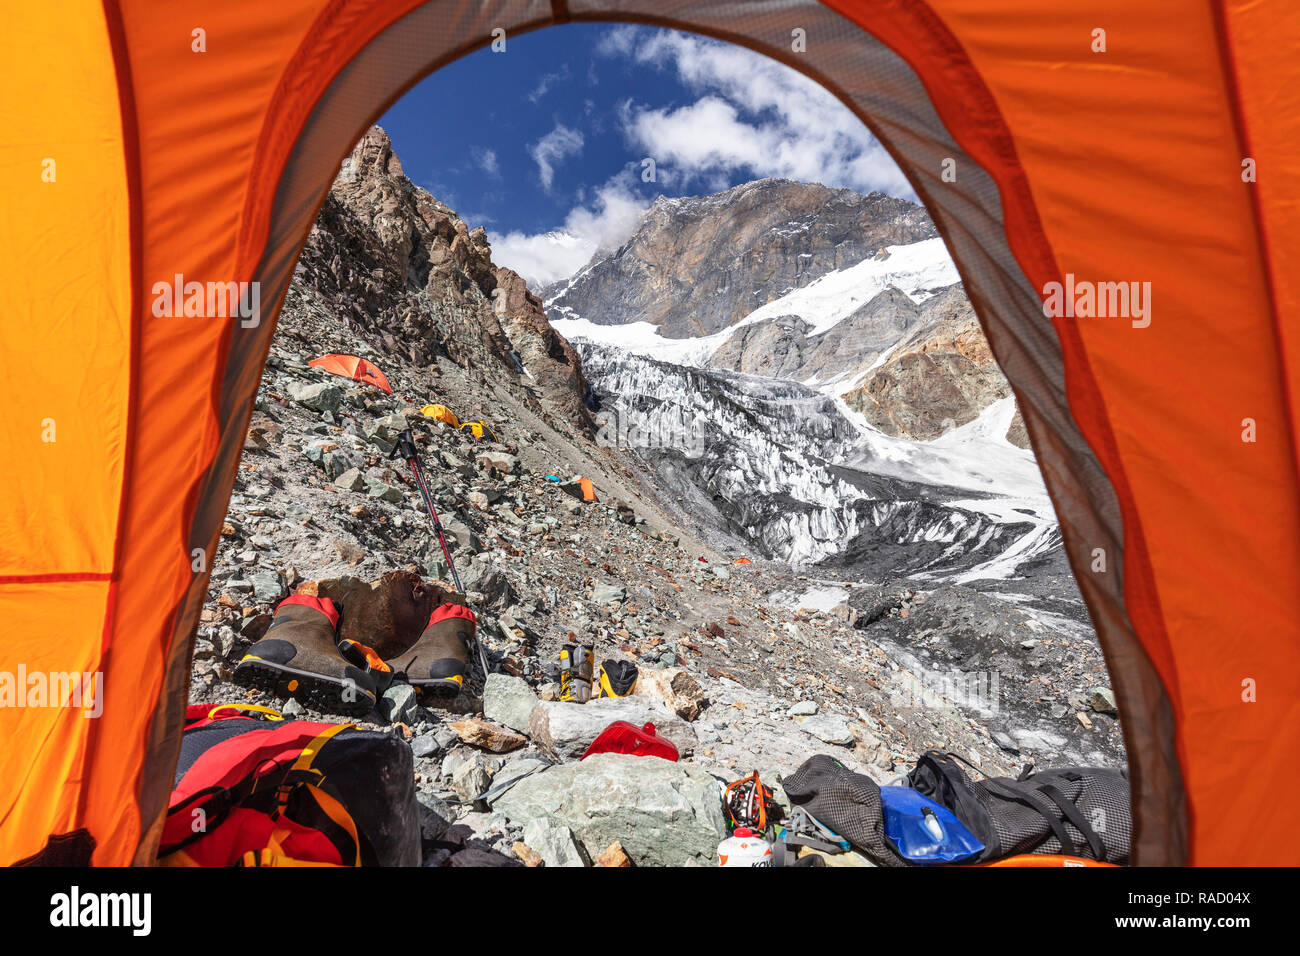 Tentes au Camp 1 à 5100m sur le pic de Korzhenevskaya, 7105m, le parc national tadjik (montagnes du Pamir), l'UNESCO, au Tadjikistan, en Asie centrale, Asie Banque D'Images